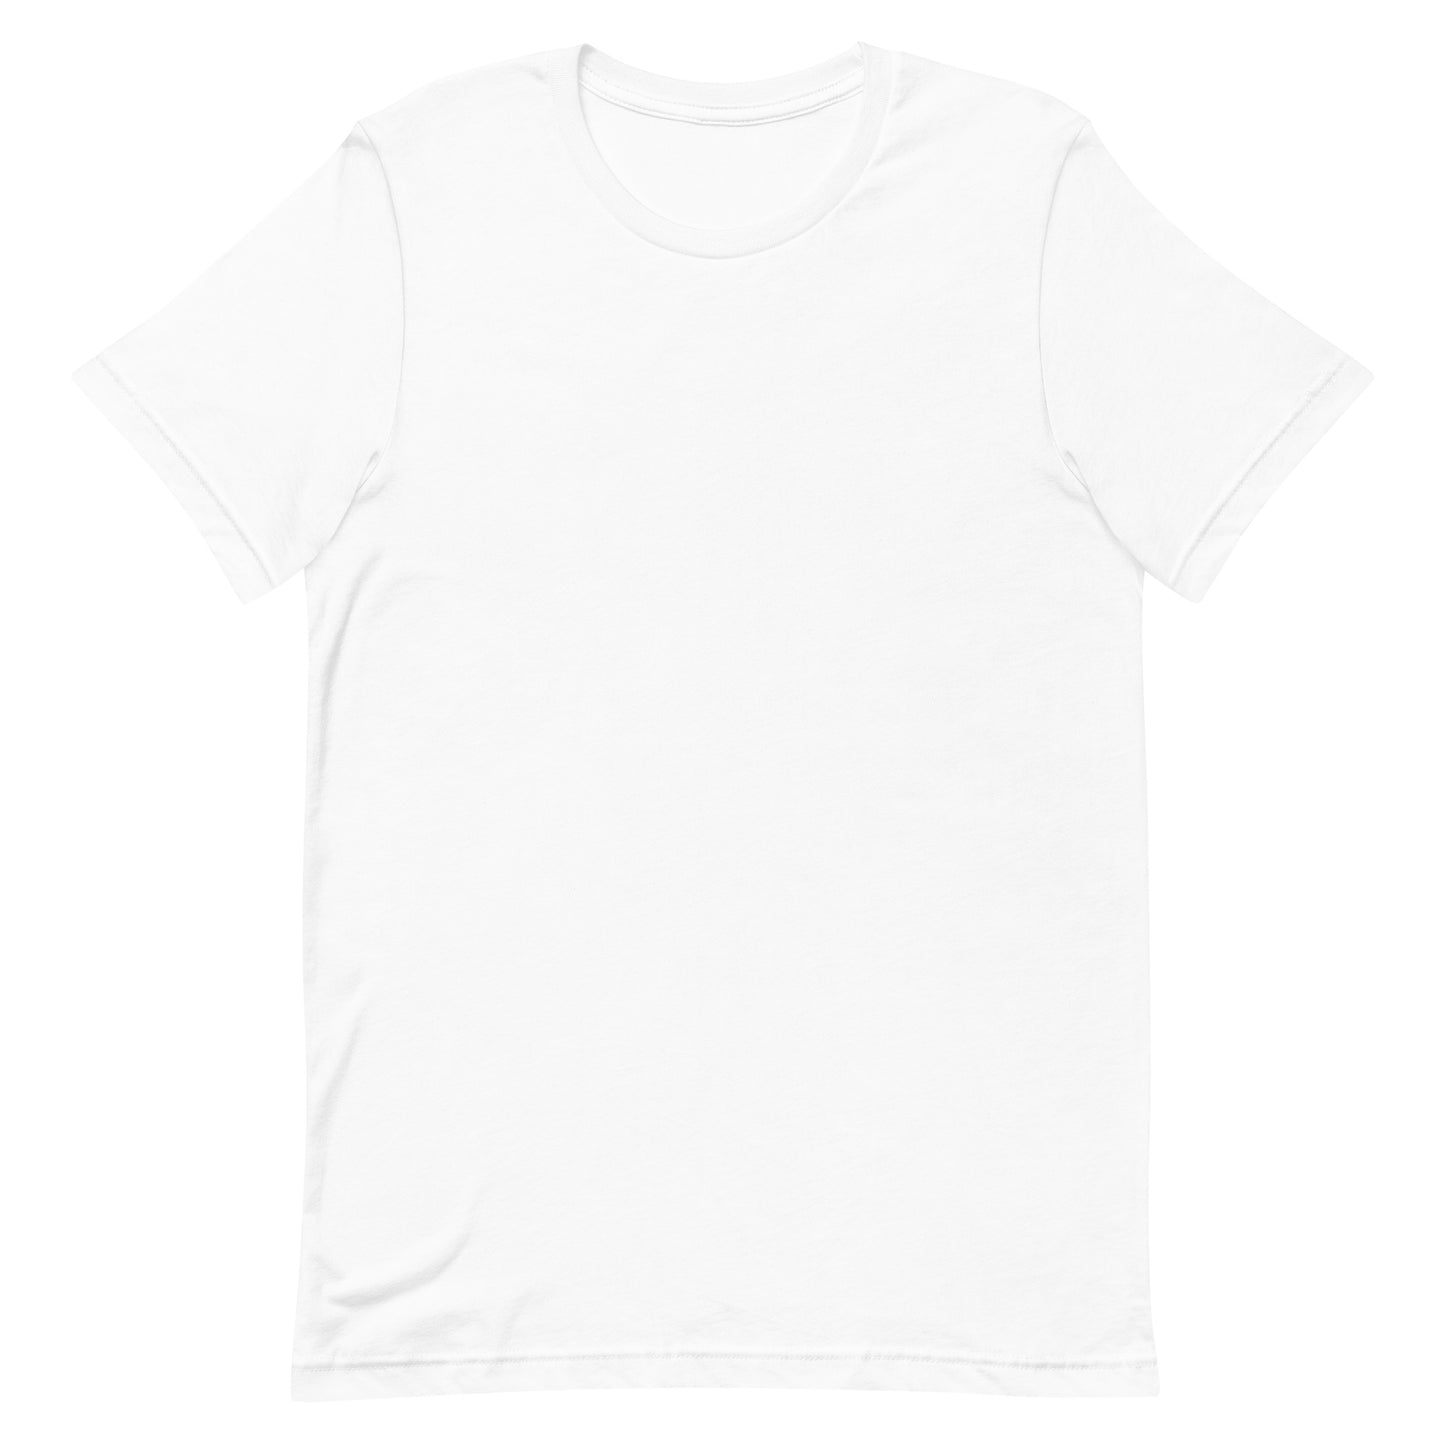 CAPRICORN - 2XL-3XL - Unisex T-Shirt (black letters)